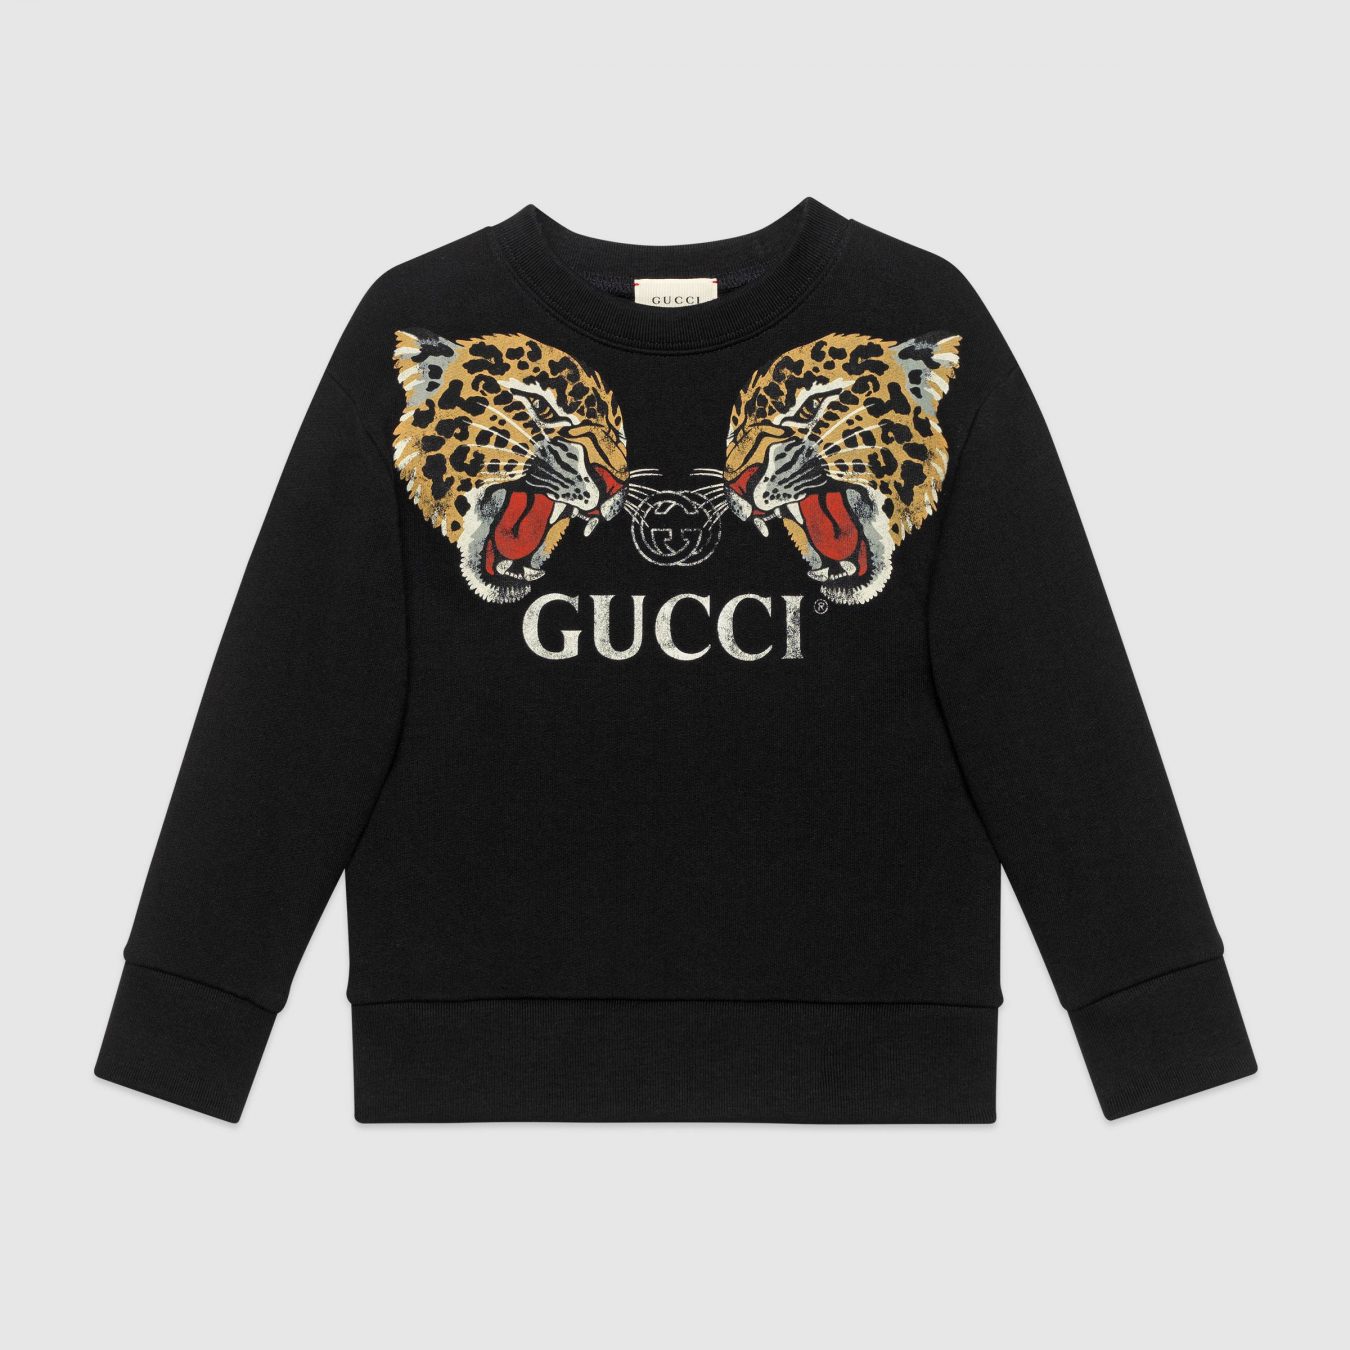 gucci children's sweatshirt with leopards